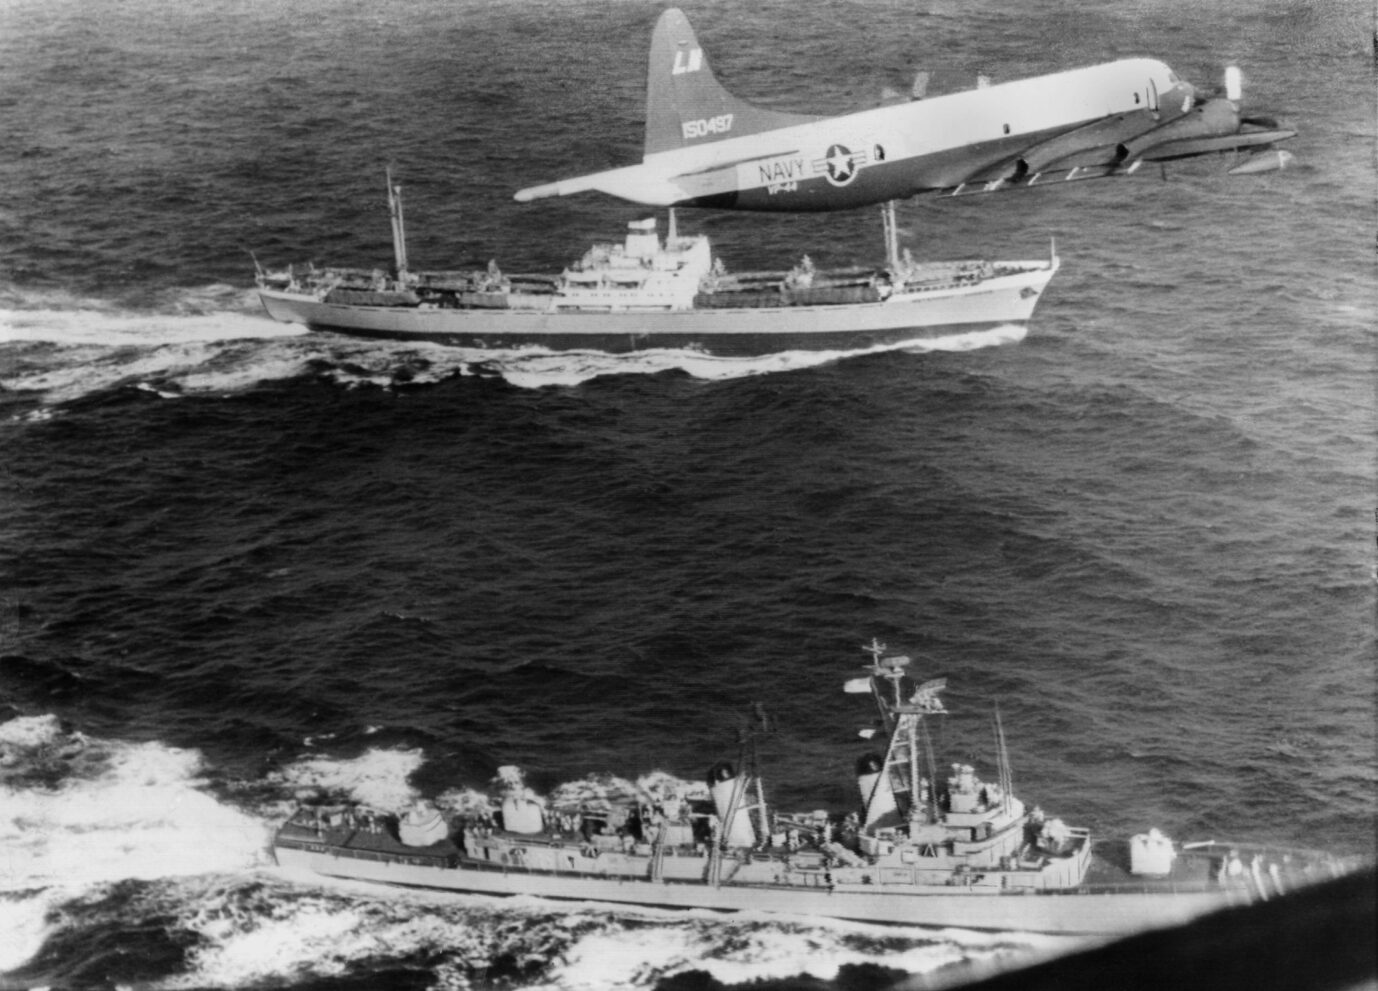 US-Aufklärungsflugzeug fliegt über sowjetischem Frachter: Die Kuba-Krise brachte Welt an Rand eines Atomkrieges